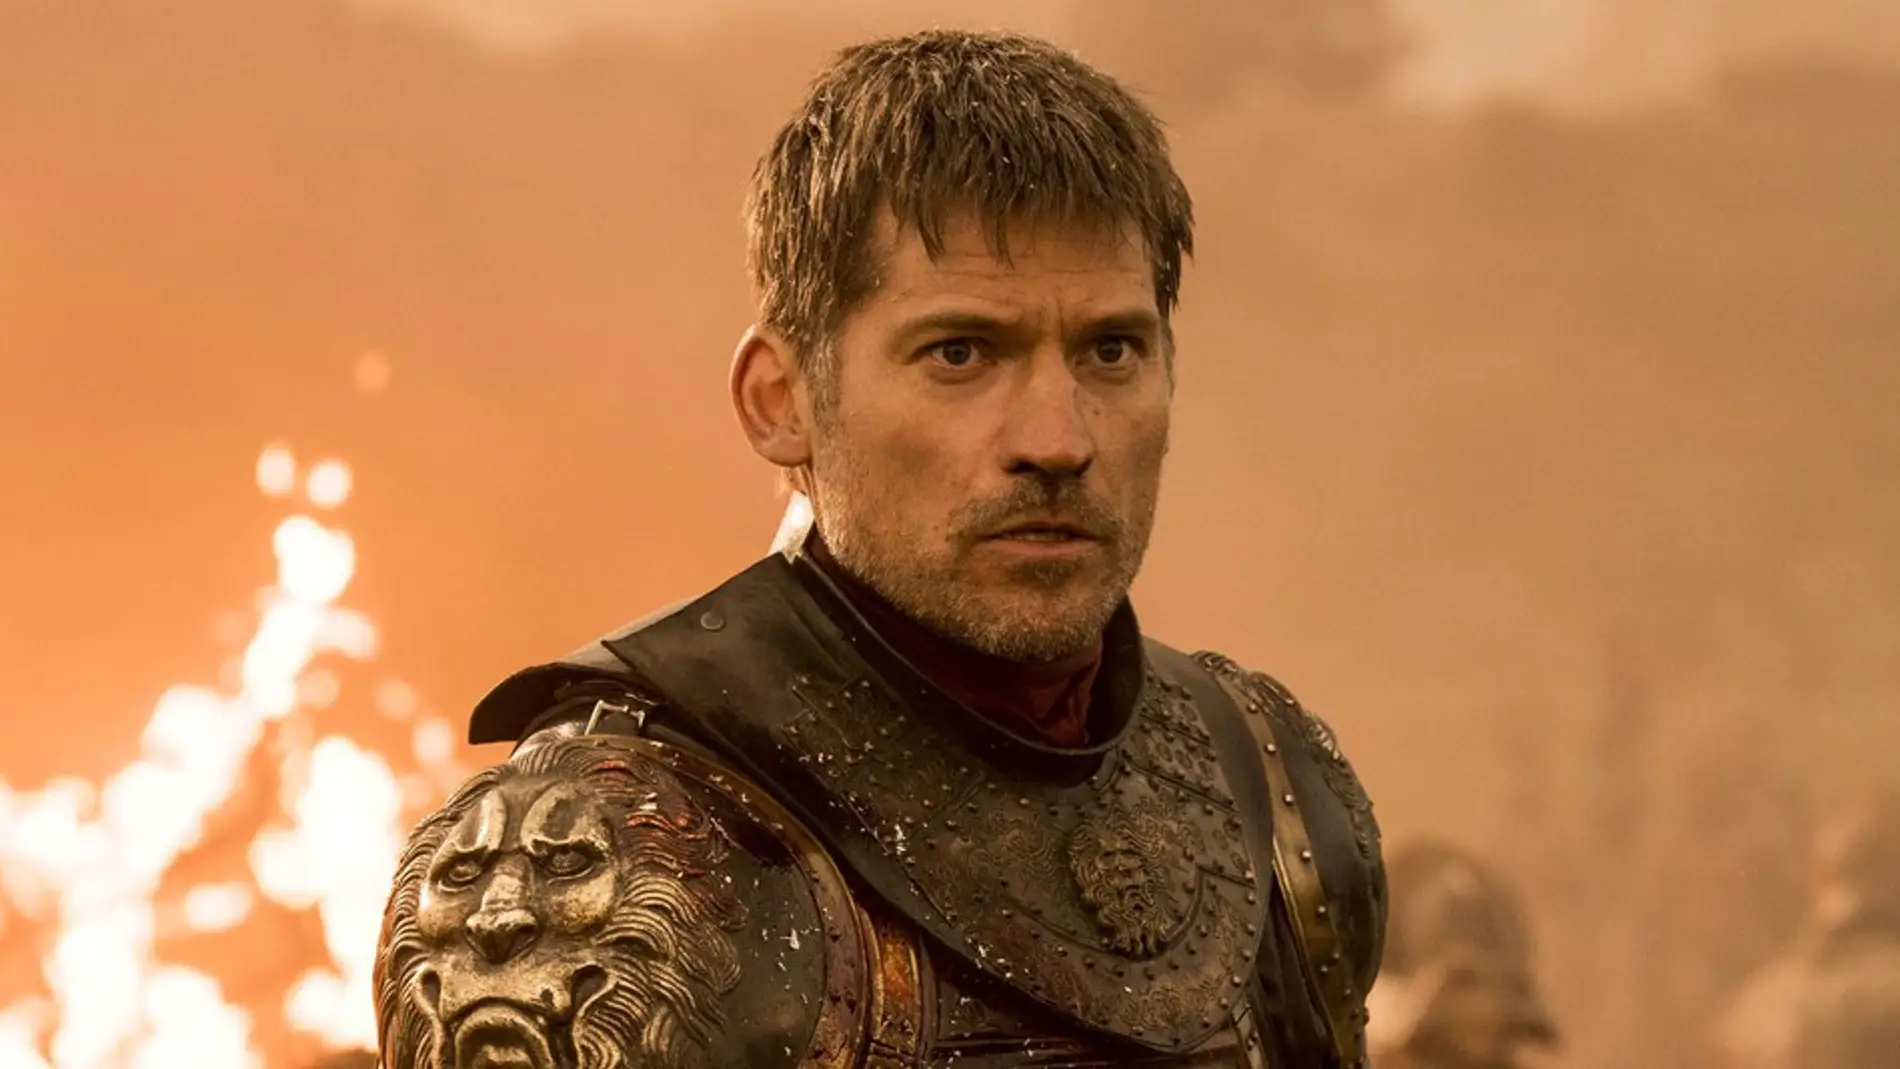 Nikolaj Coster-Waldau, Jaime Lannister en 'Juego de Tronos'